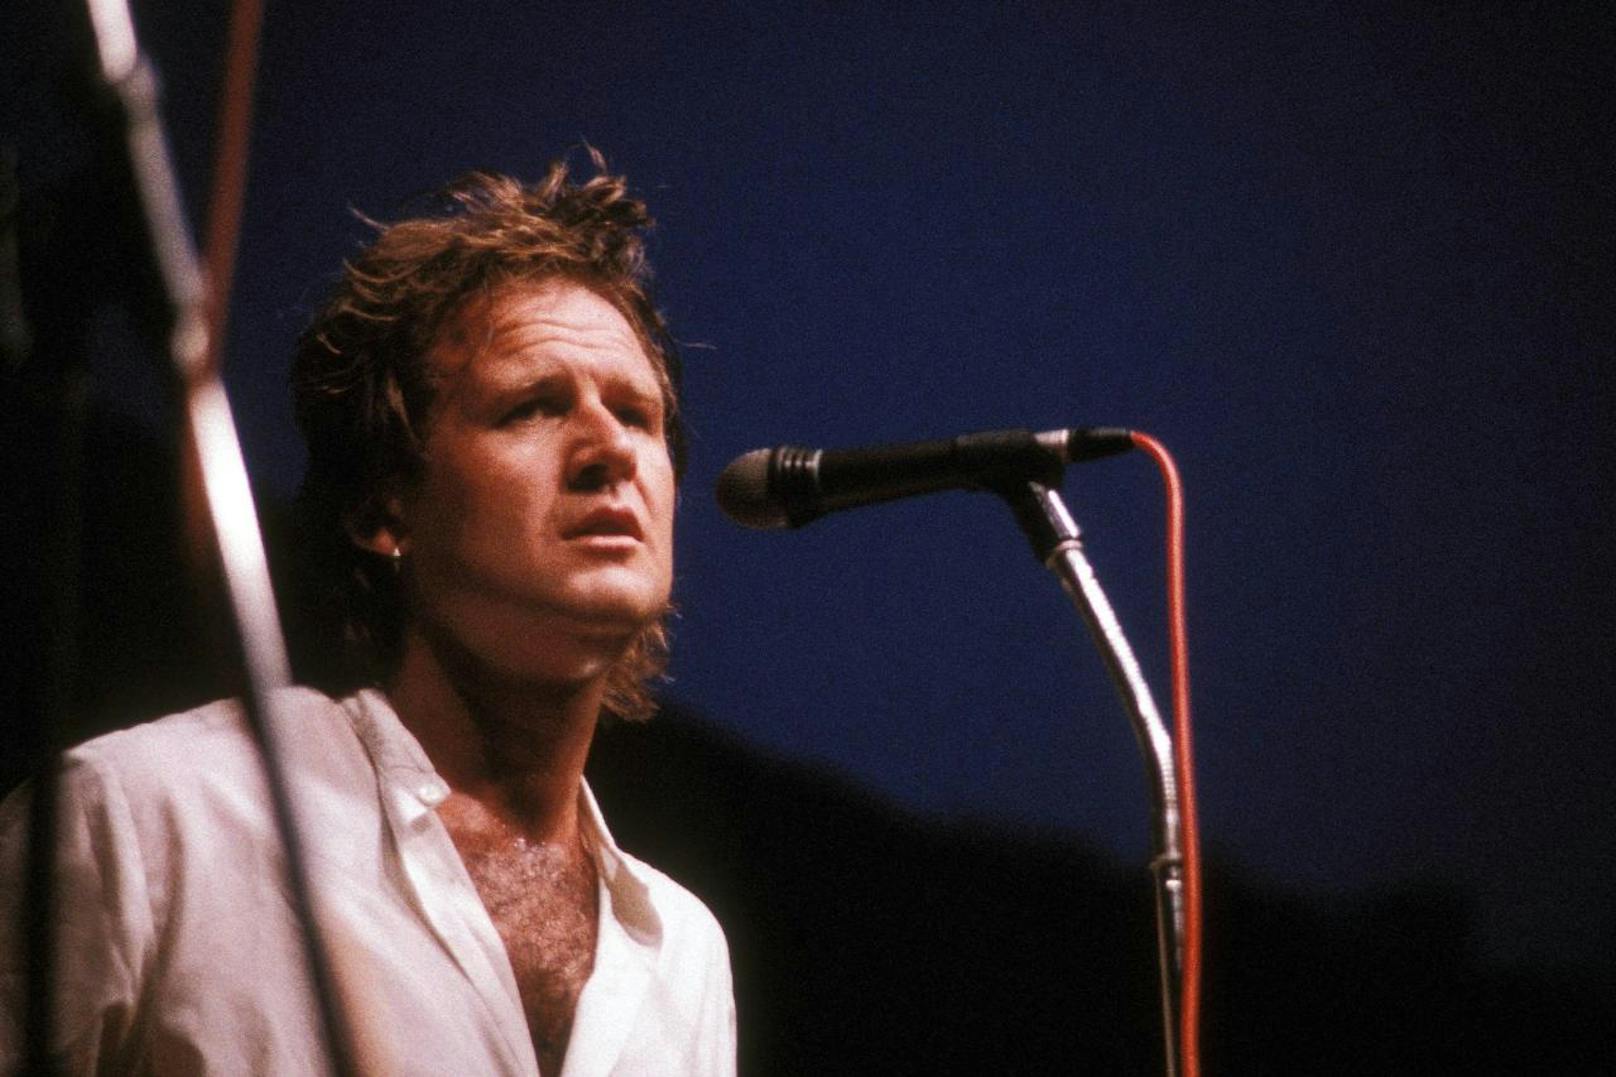 Sänger Wilfried Scheutz während eines Konzerts in München,1986.